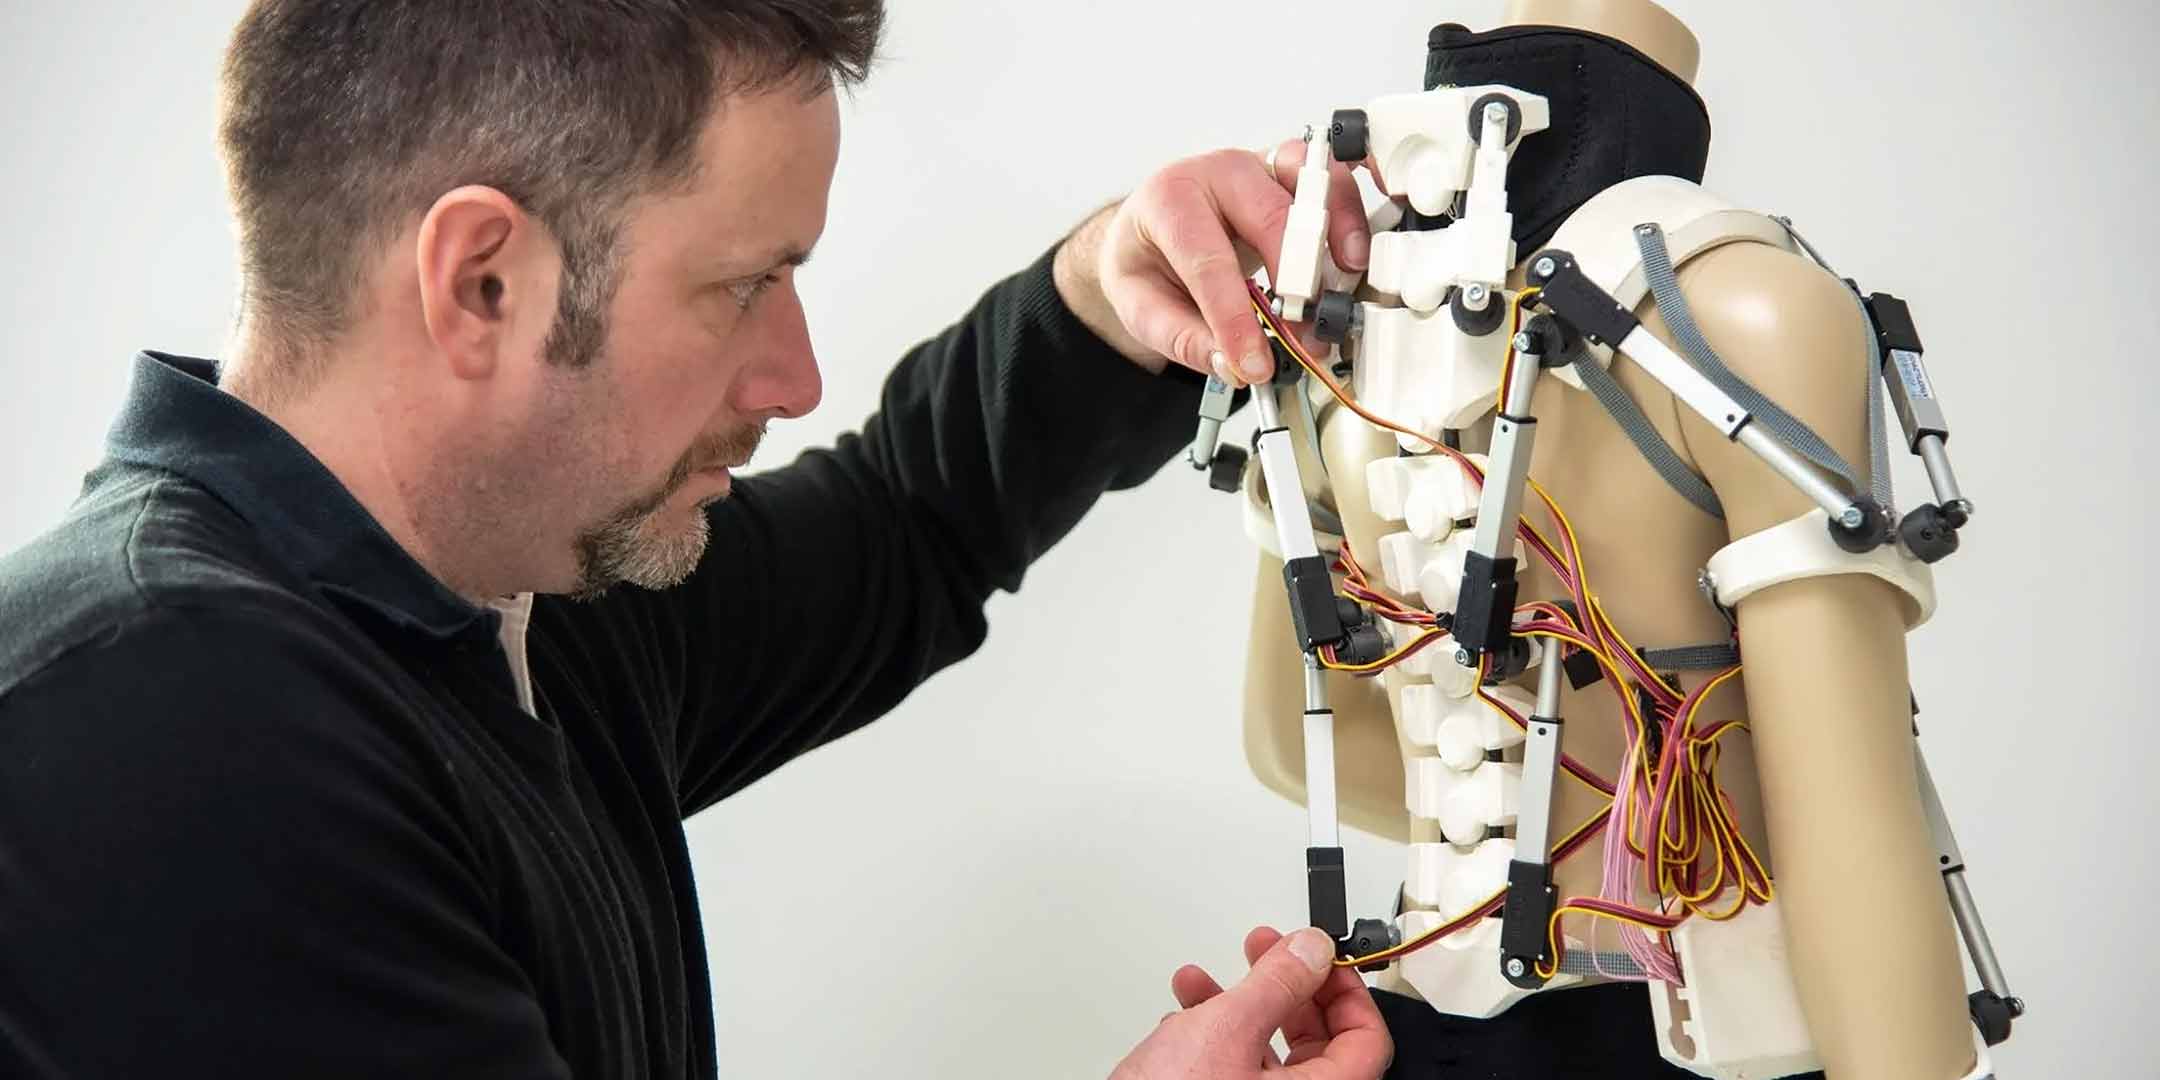 3D printed exoskeleton model